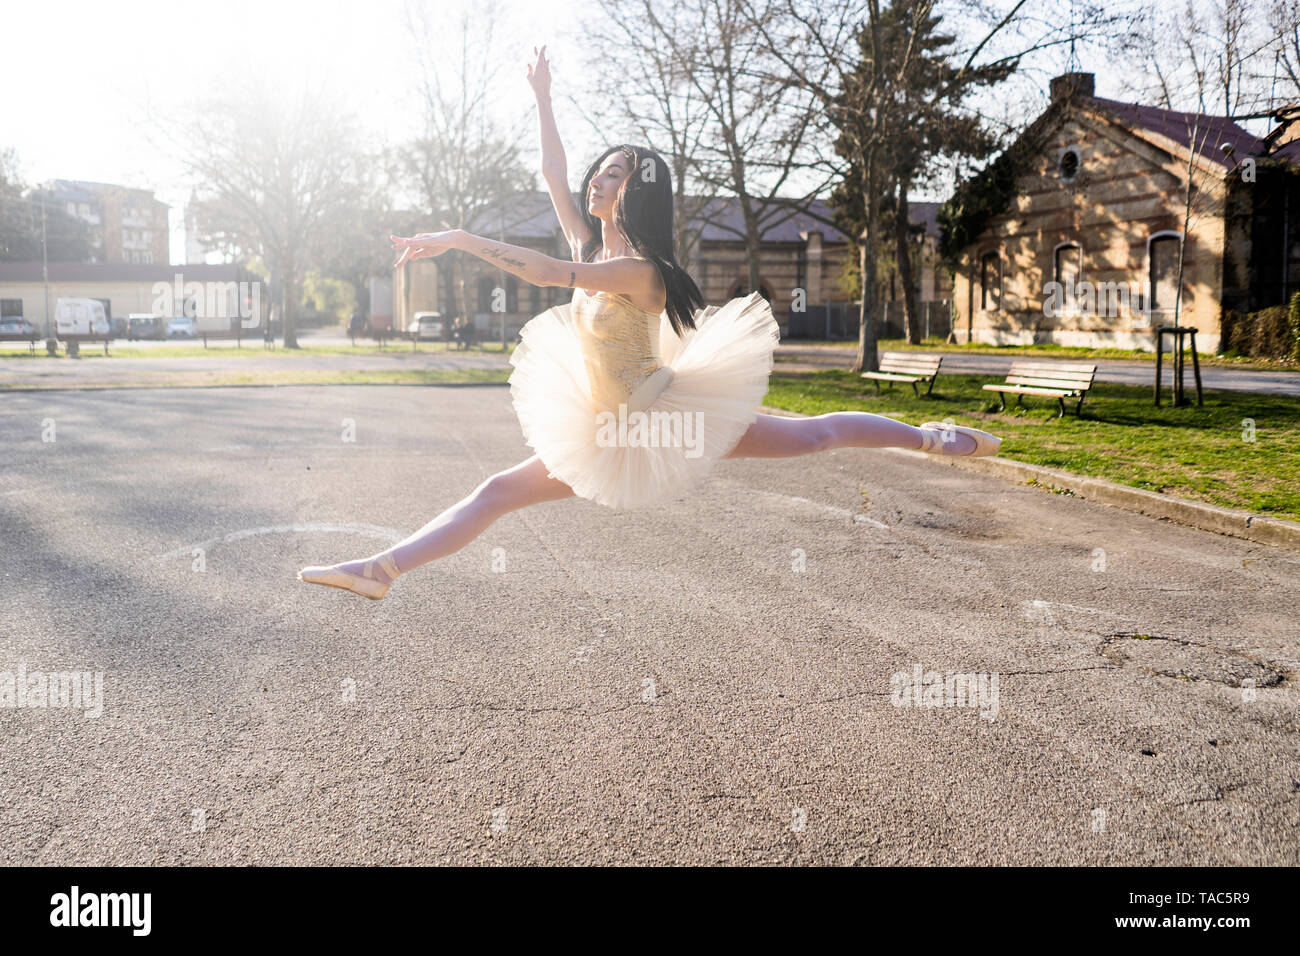 Italien, Verona, Ballerina tanzen in der Stadt mitten in der Luft springen Stockfoto